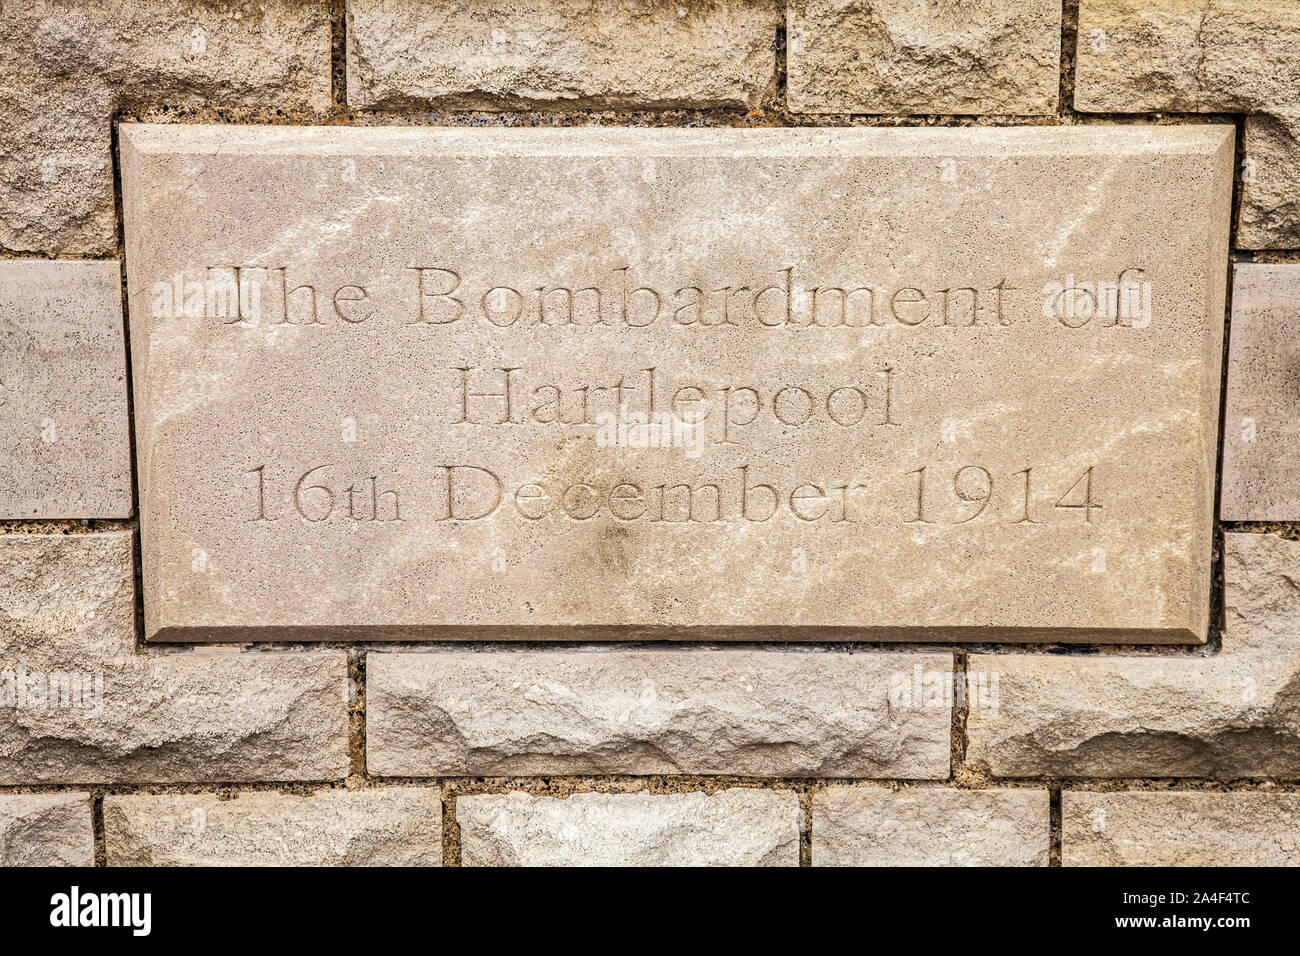 Pierre commémorative dans le mur à Hartlepool pointe pour le bombardement de Hartlepool, le 16 décembre 1914 Banque D'Images